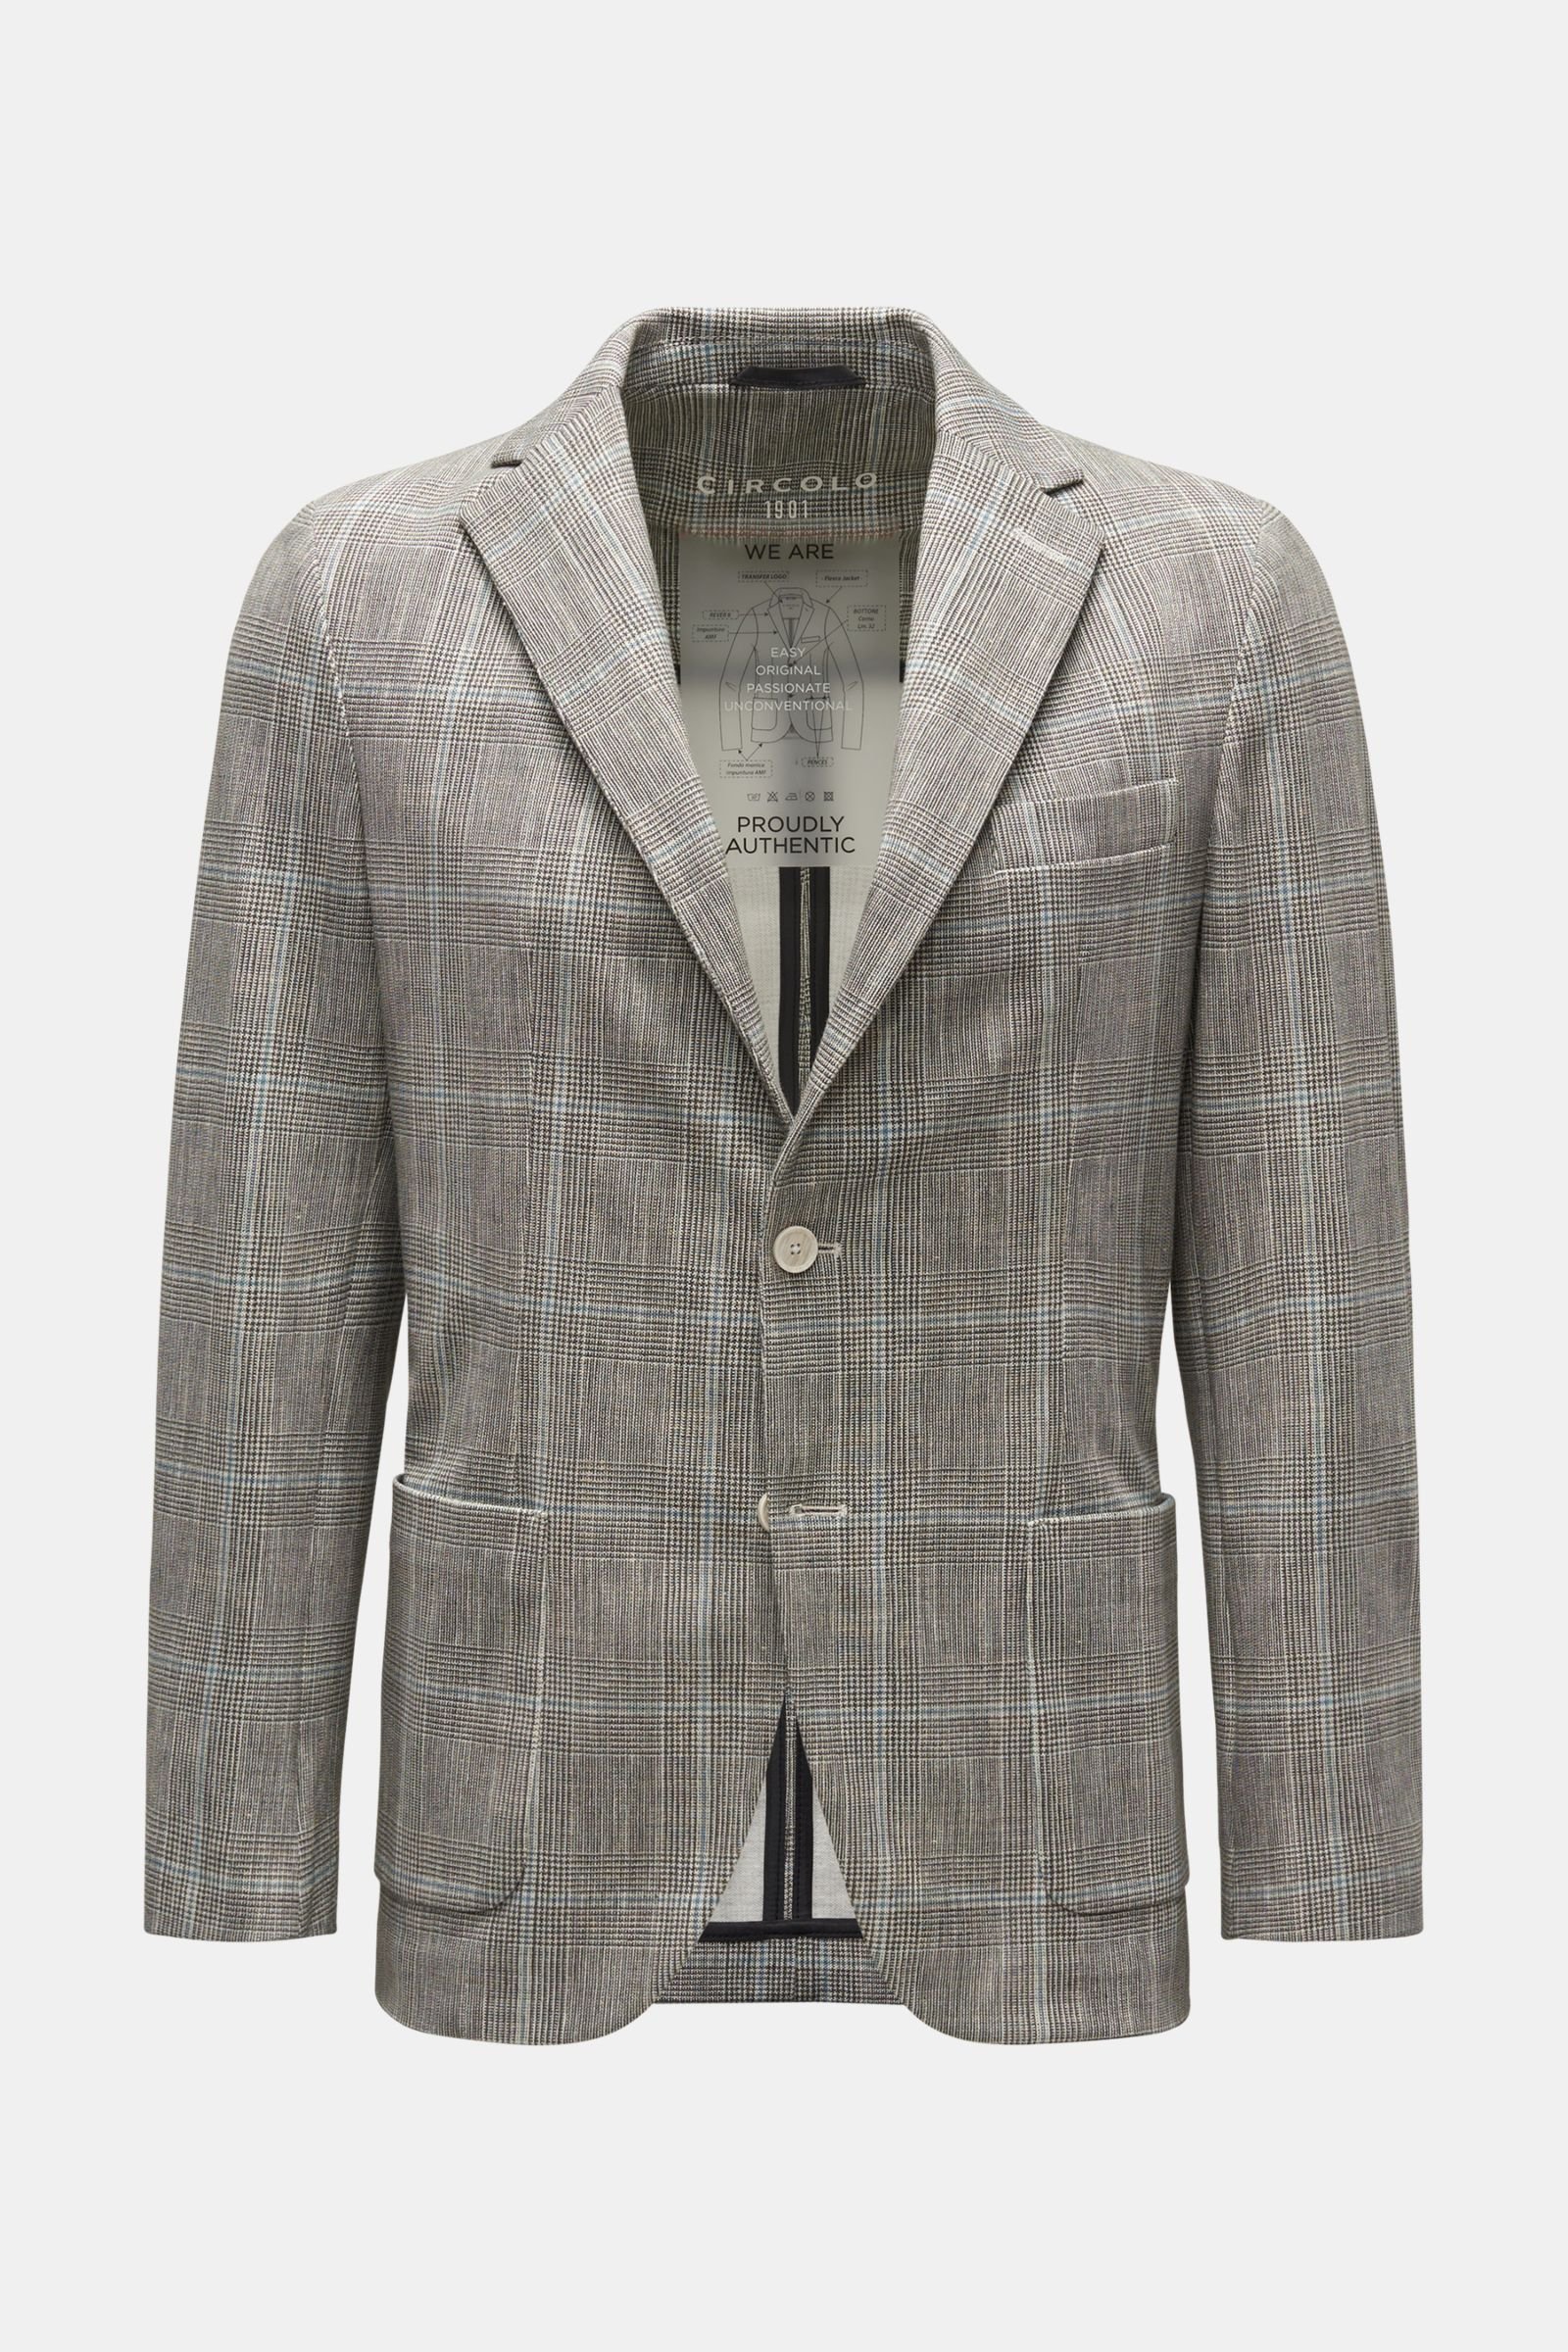 Jersey jacket dark grey/off-white checked